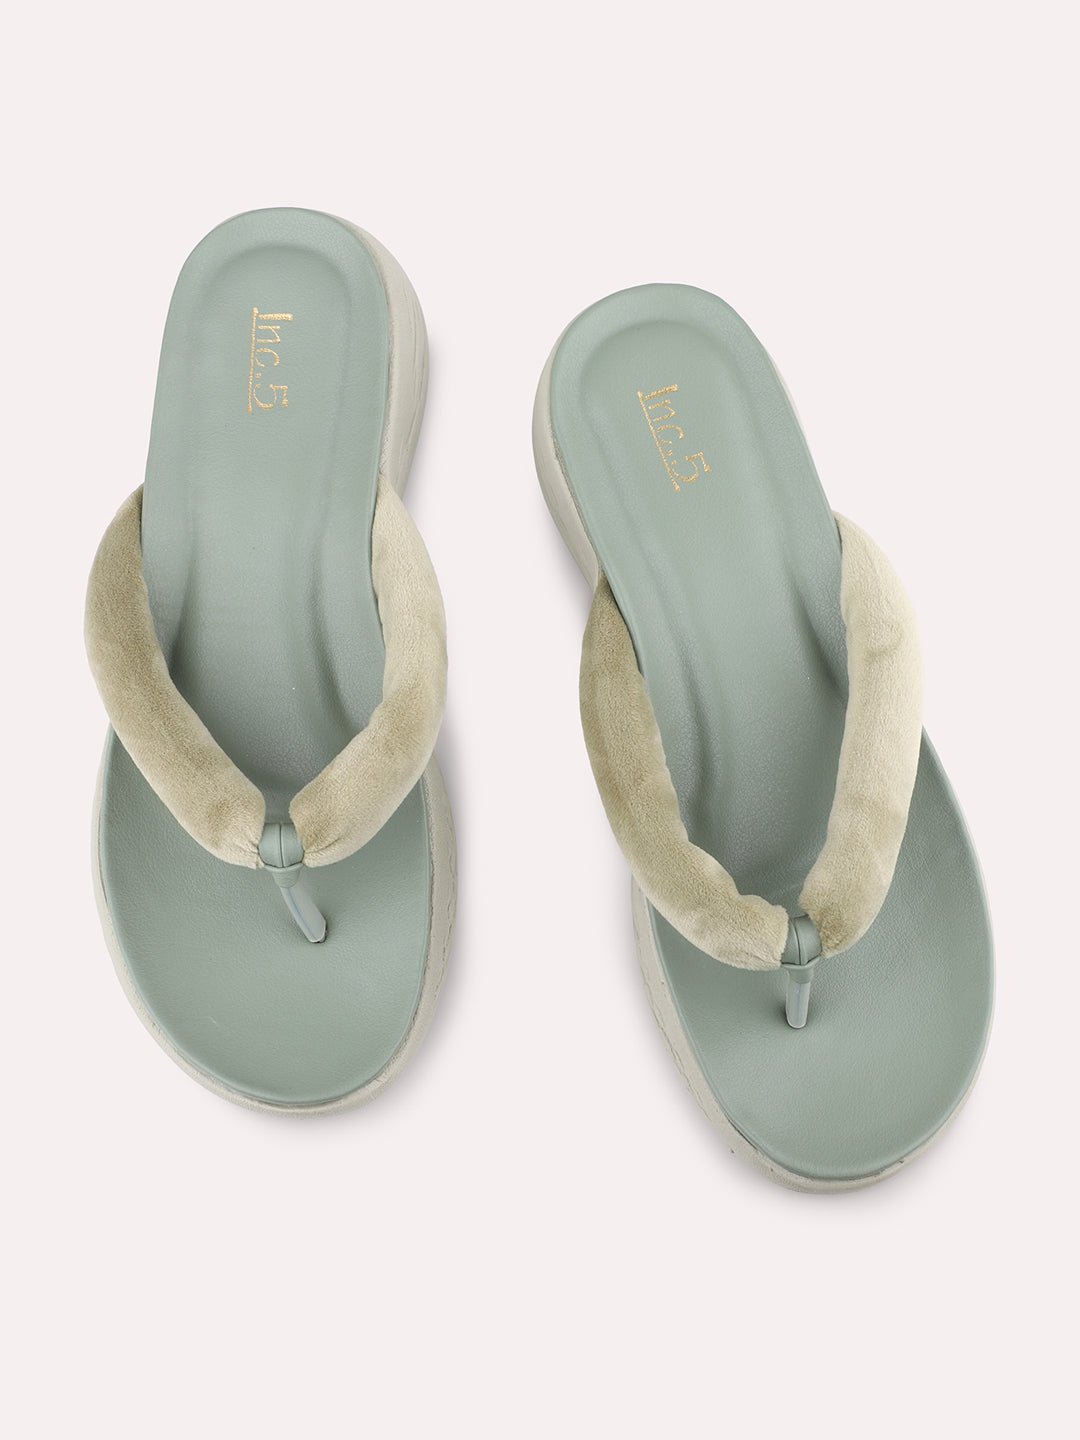 Buy Now Women Green Open Toe Comfort Sandals – Inc5 Shoes